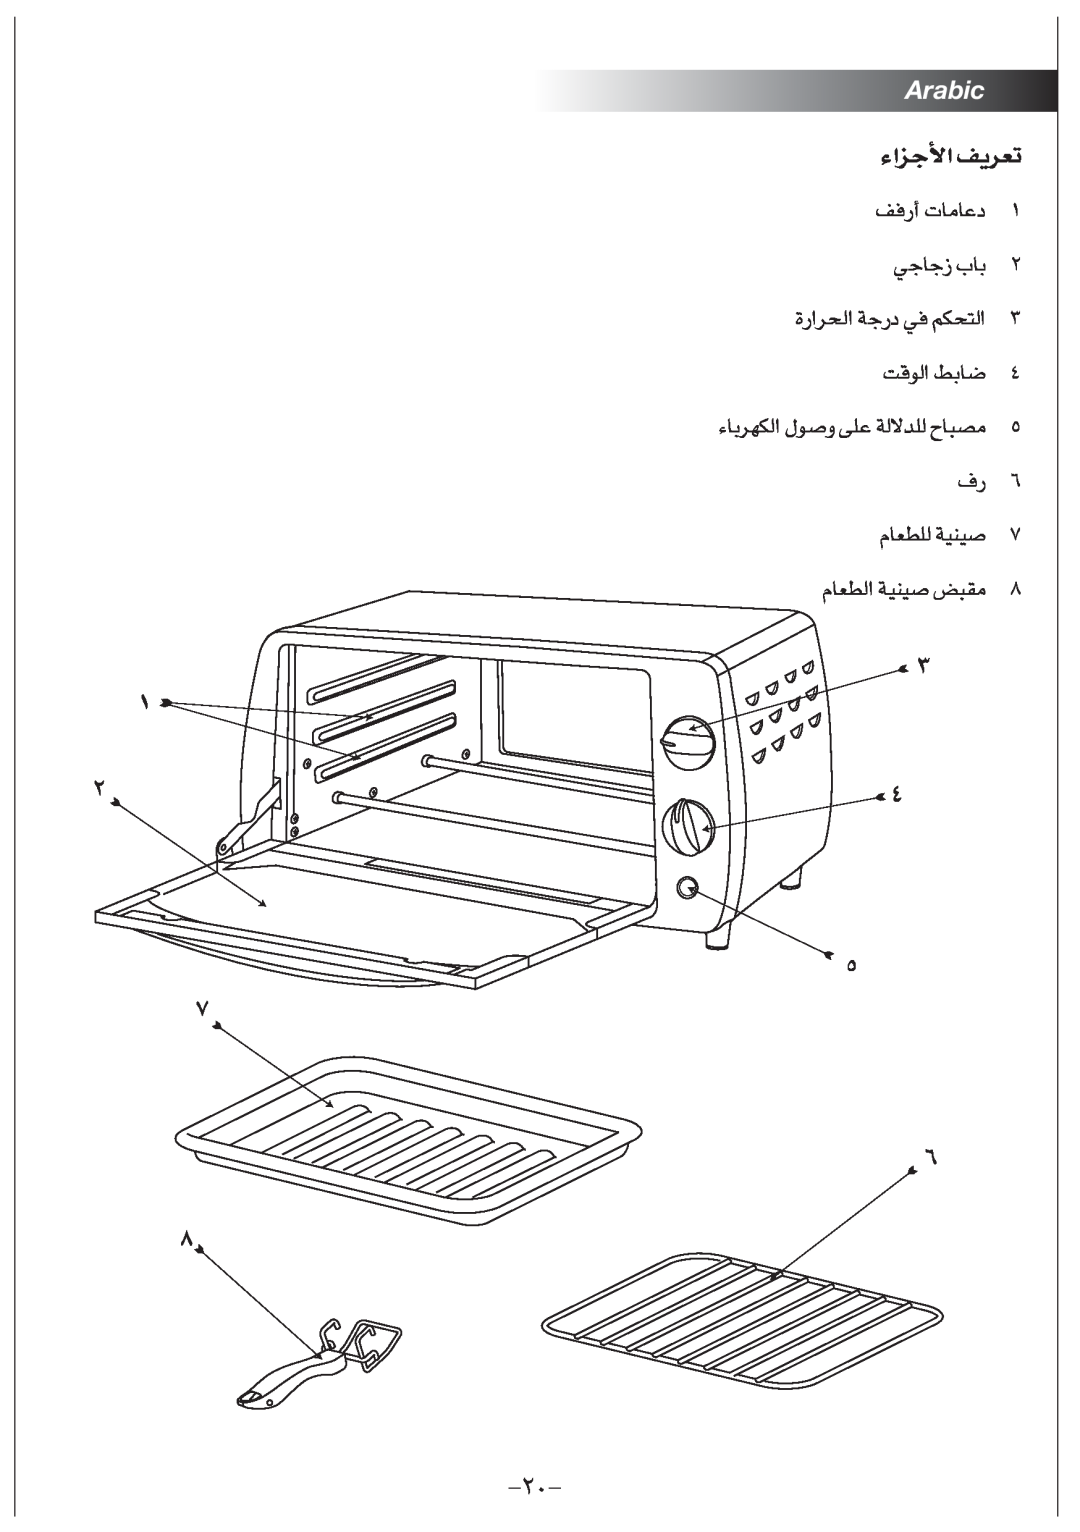 Black & Decker TRO1000 manual Arabic, §e«¡ « ¢Fd¥n 